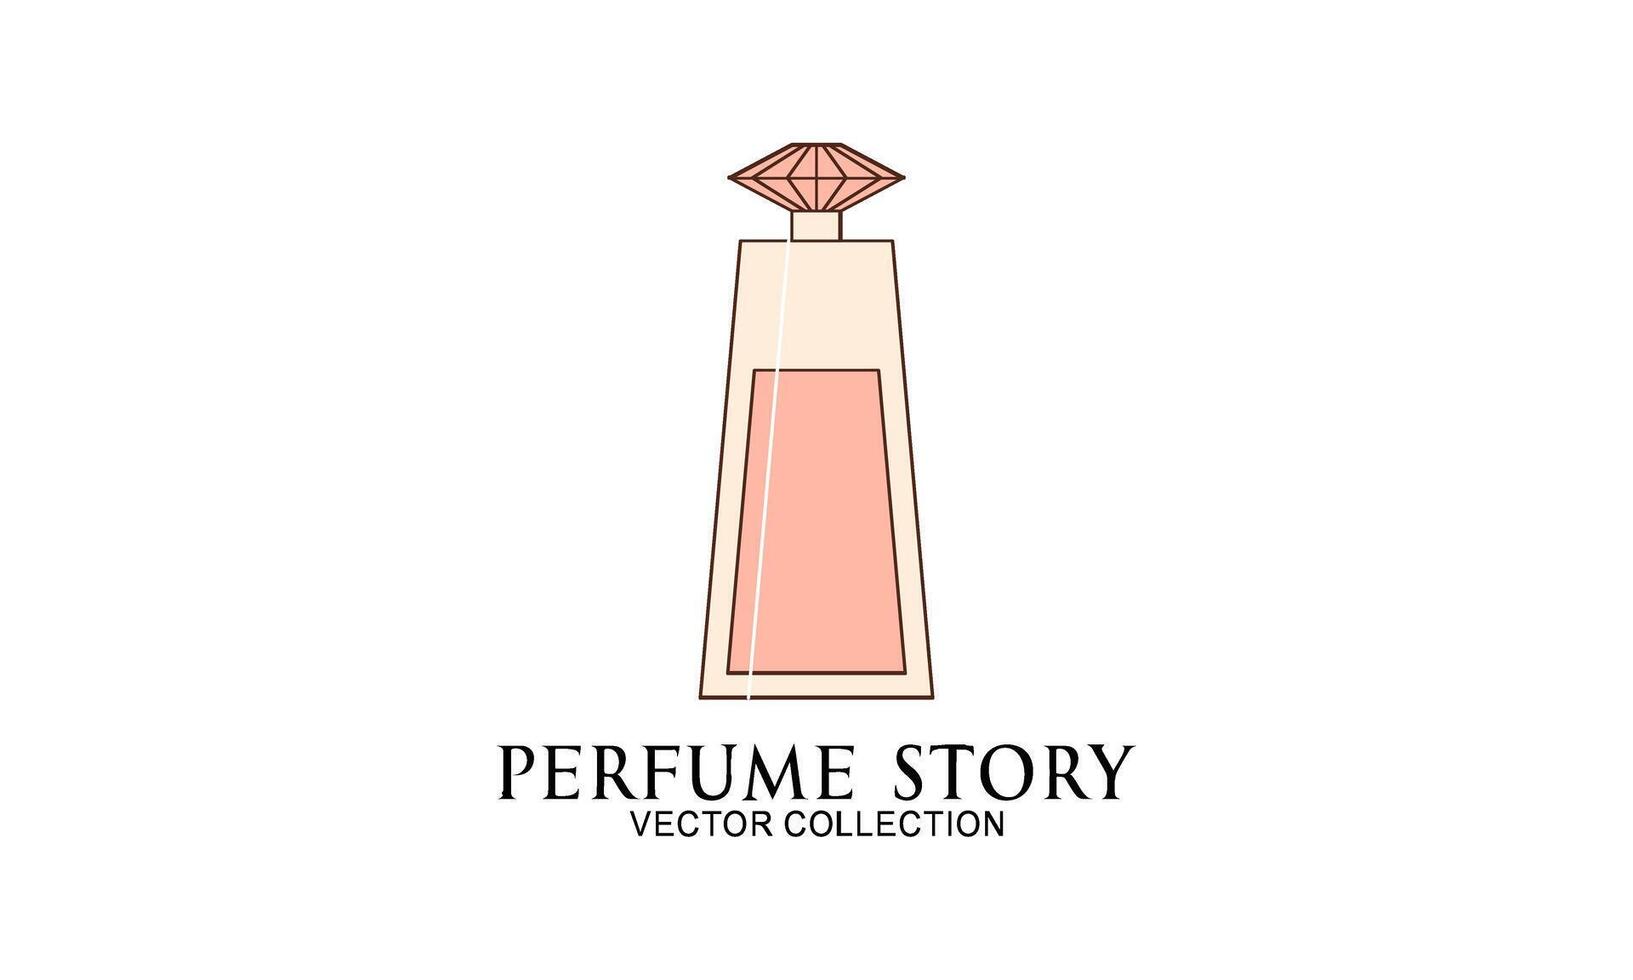 classique parfum or bouteille illustration. charme fragrance isolé icône vecteur